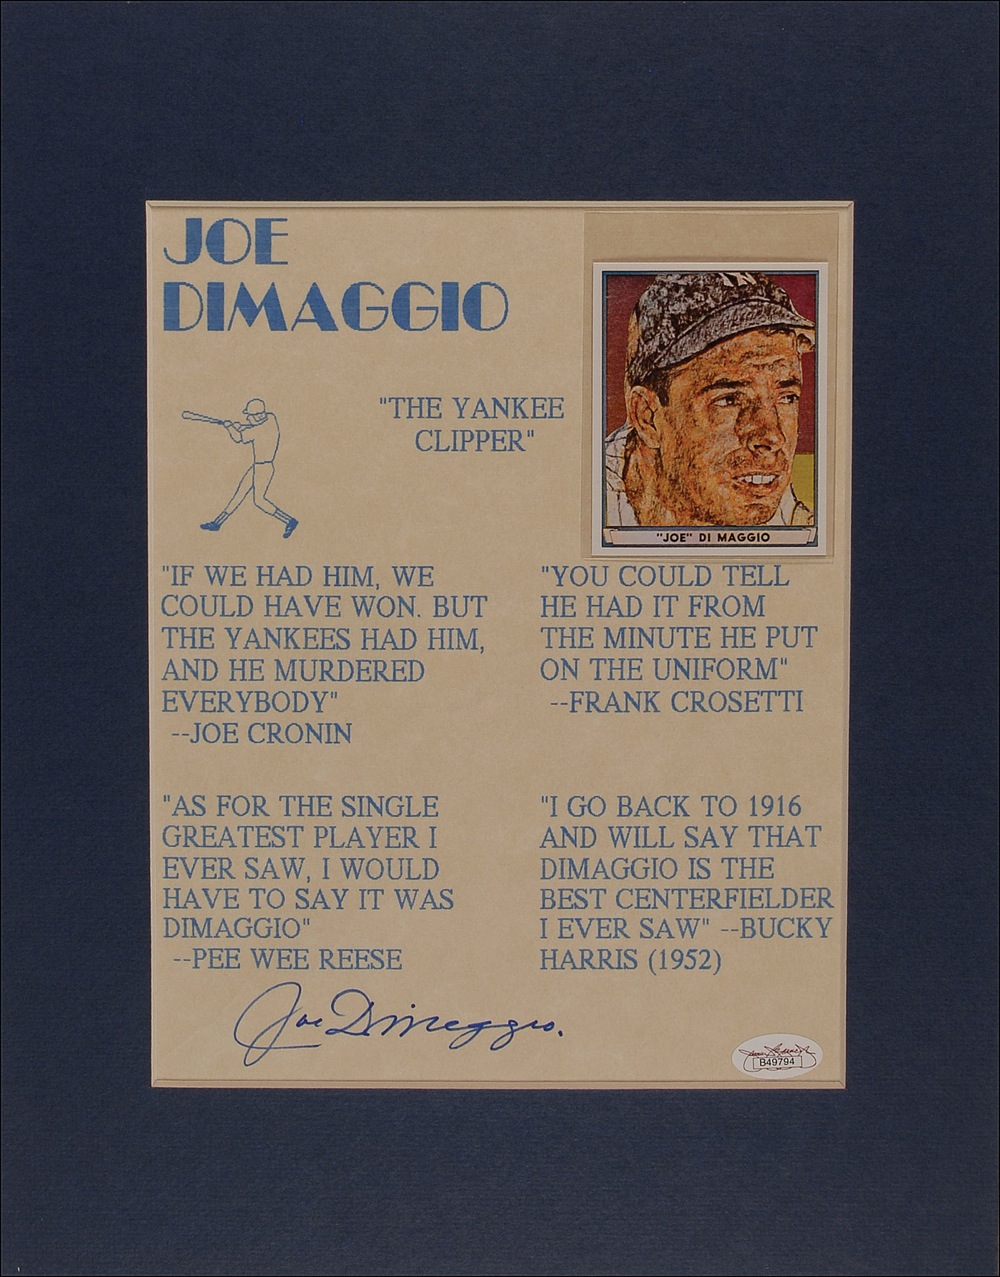 Lot #1397 Joe DiMaggio